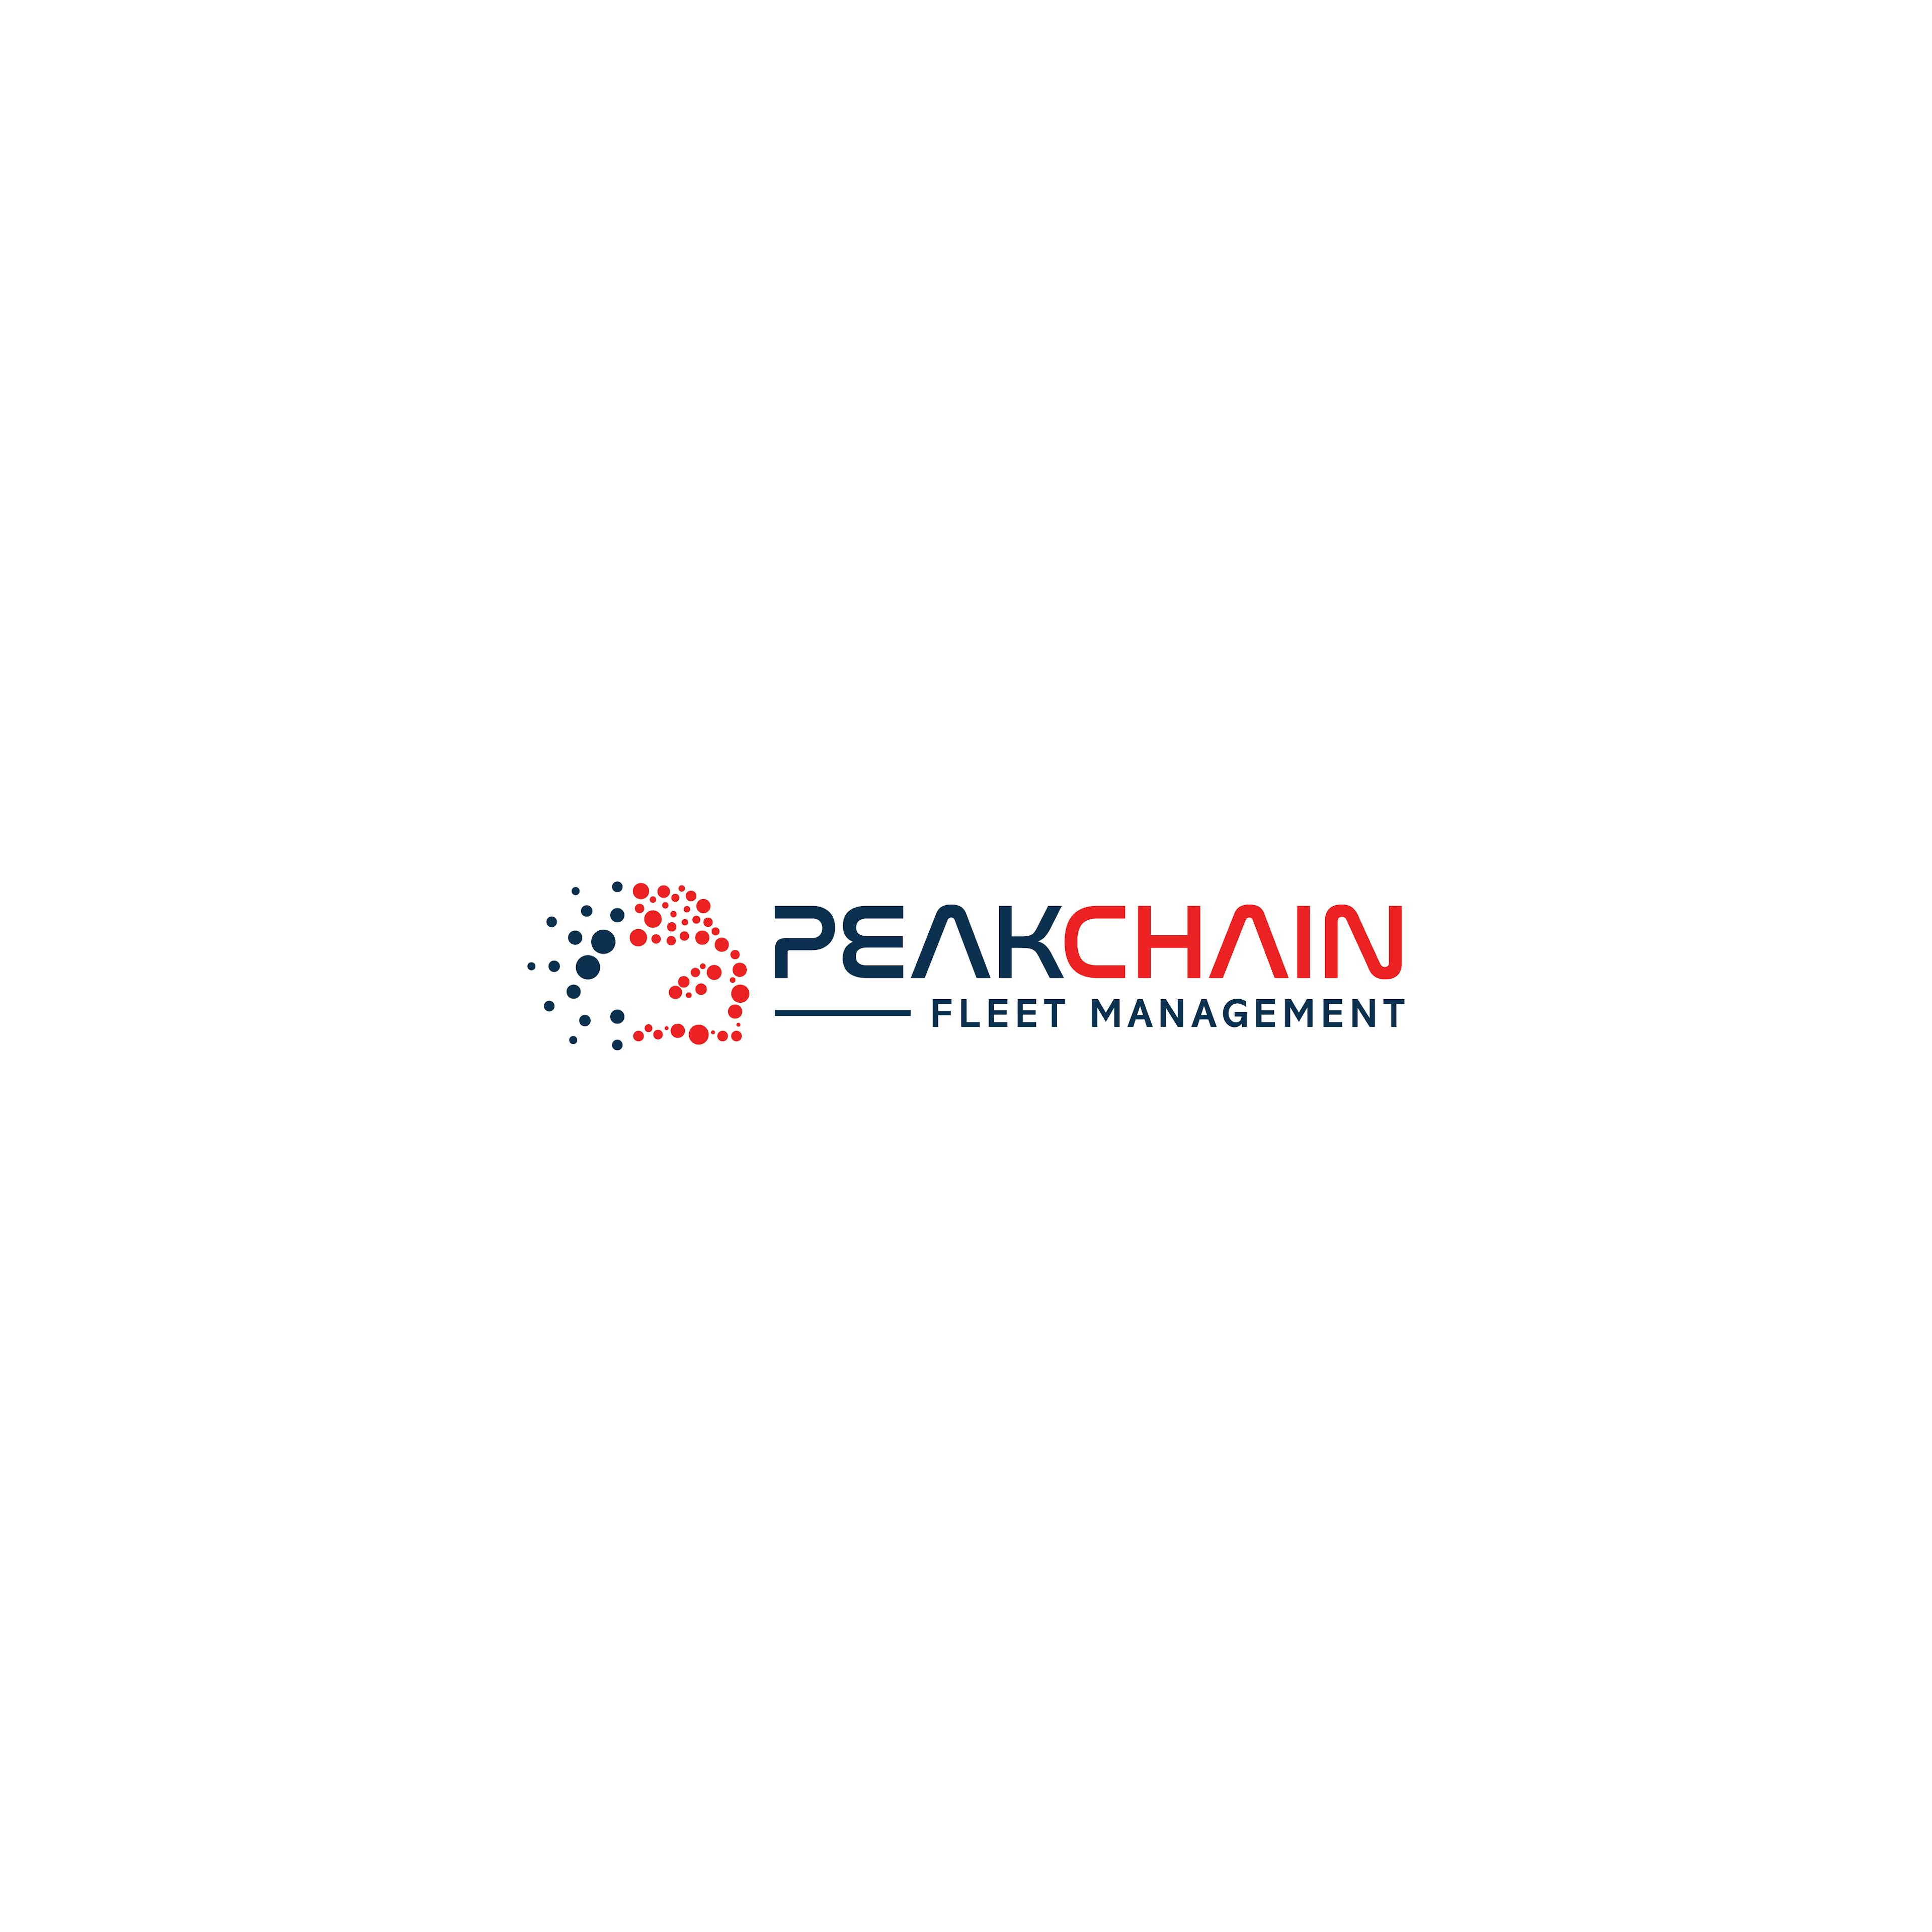 PeakChain Fleet Management Platform on Cardano Blockchain